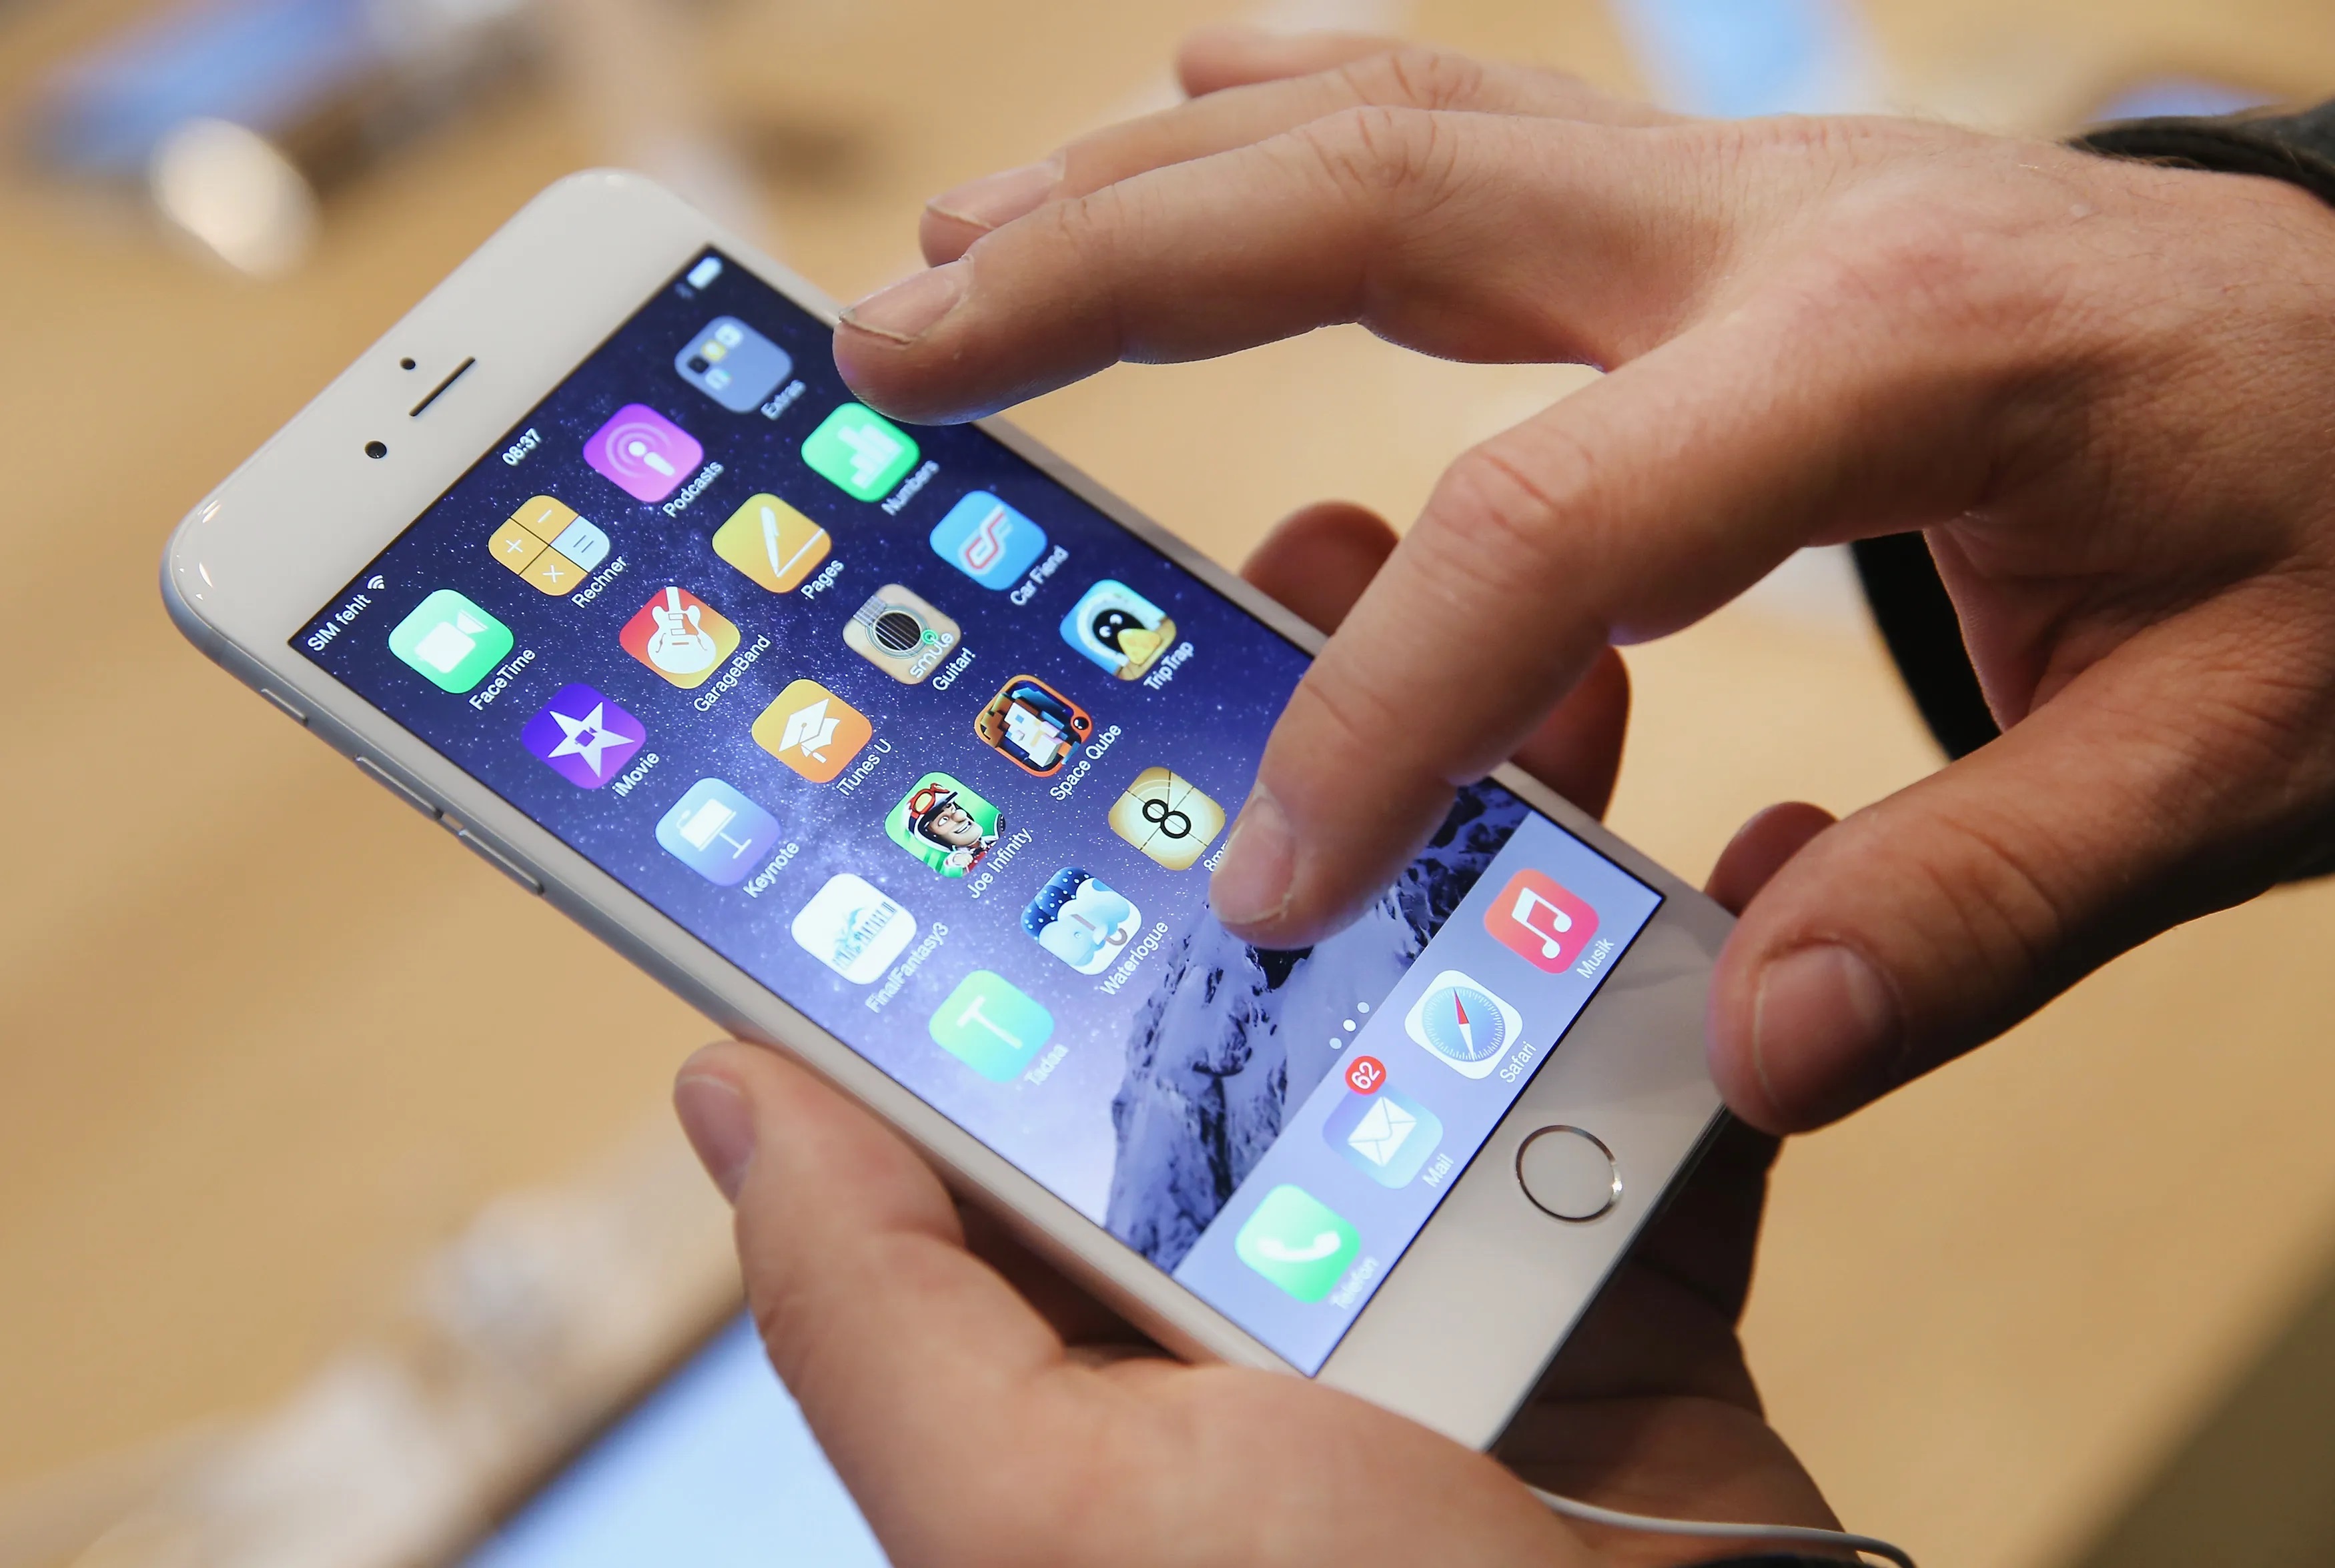 Apple niespodziewanie udostępniło aktualizację iOS 12.5.5 dla starszych smartfonów iPhone 5s, iPhone 6 i 6 Plus oraz tabletów iPad Air i iPad mini